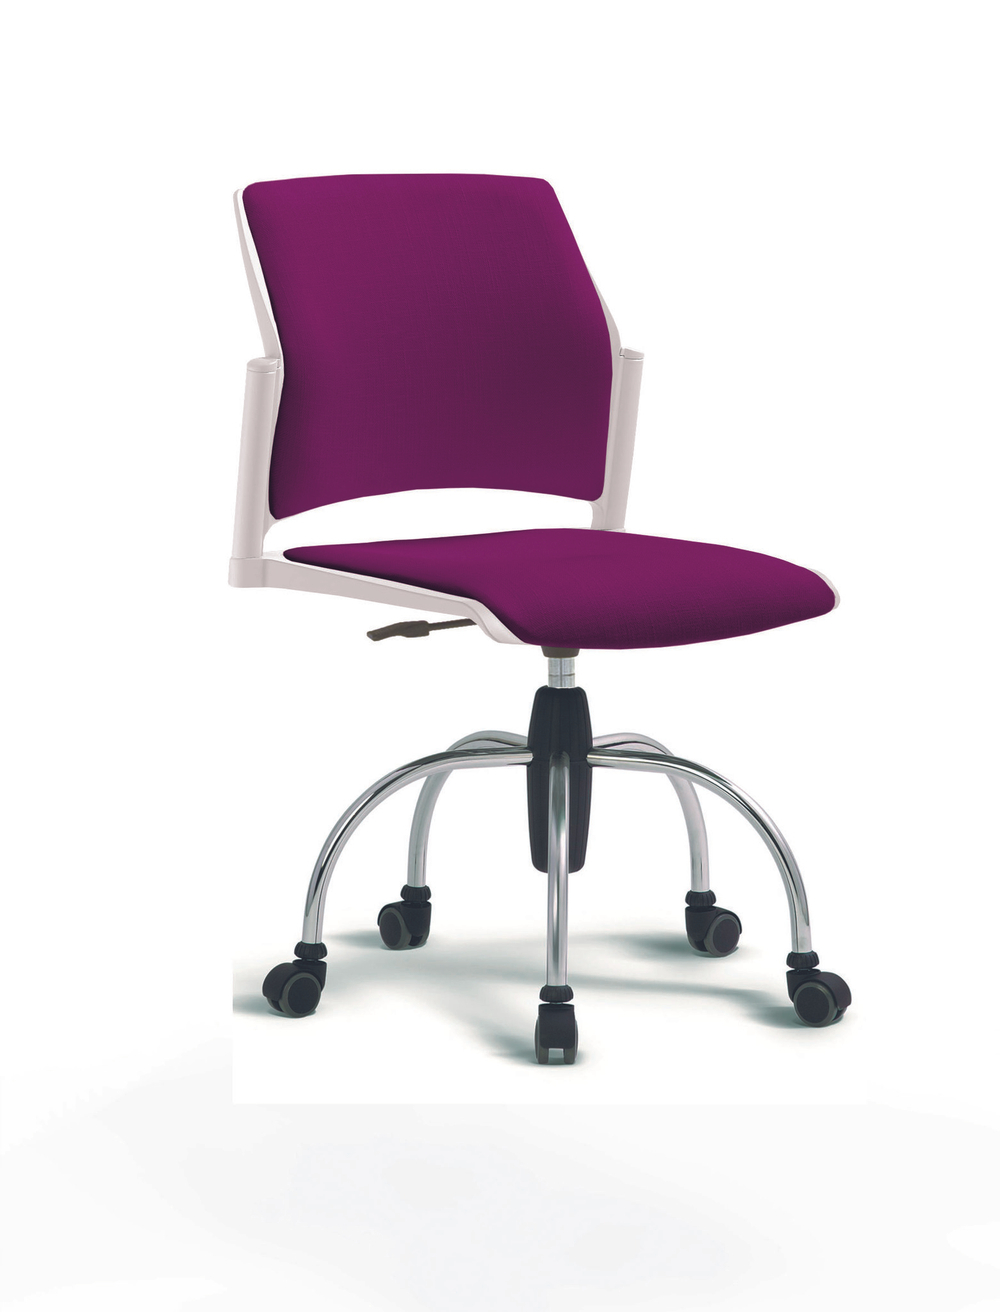 Кресло Rewind каркас хромированный, пластик белый, база паук хромированная, без подлокотников, сидение и спинка фиолетовые